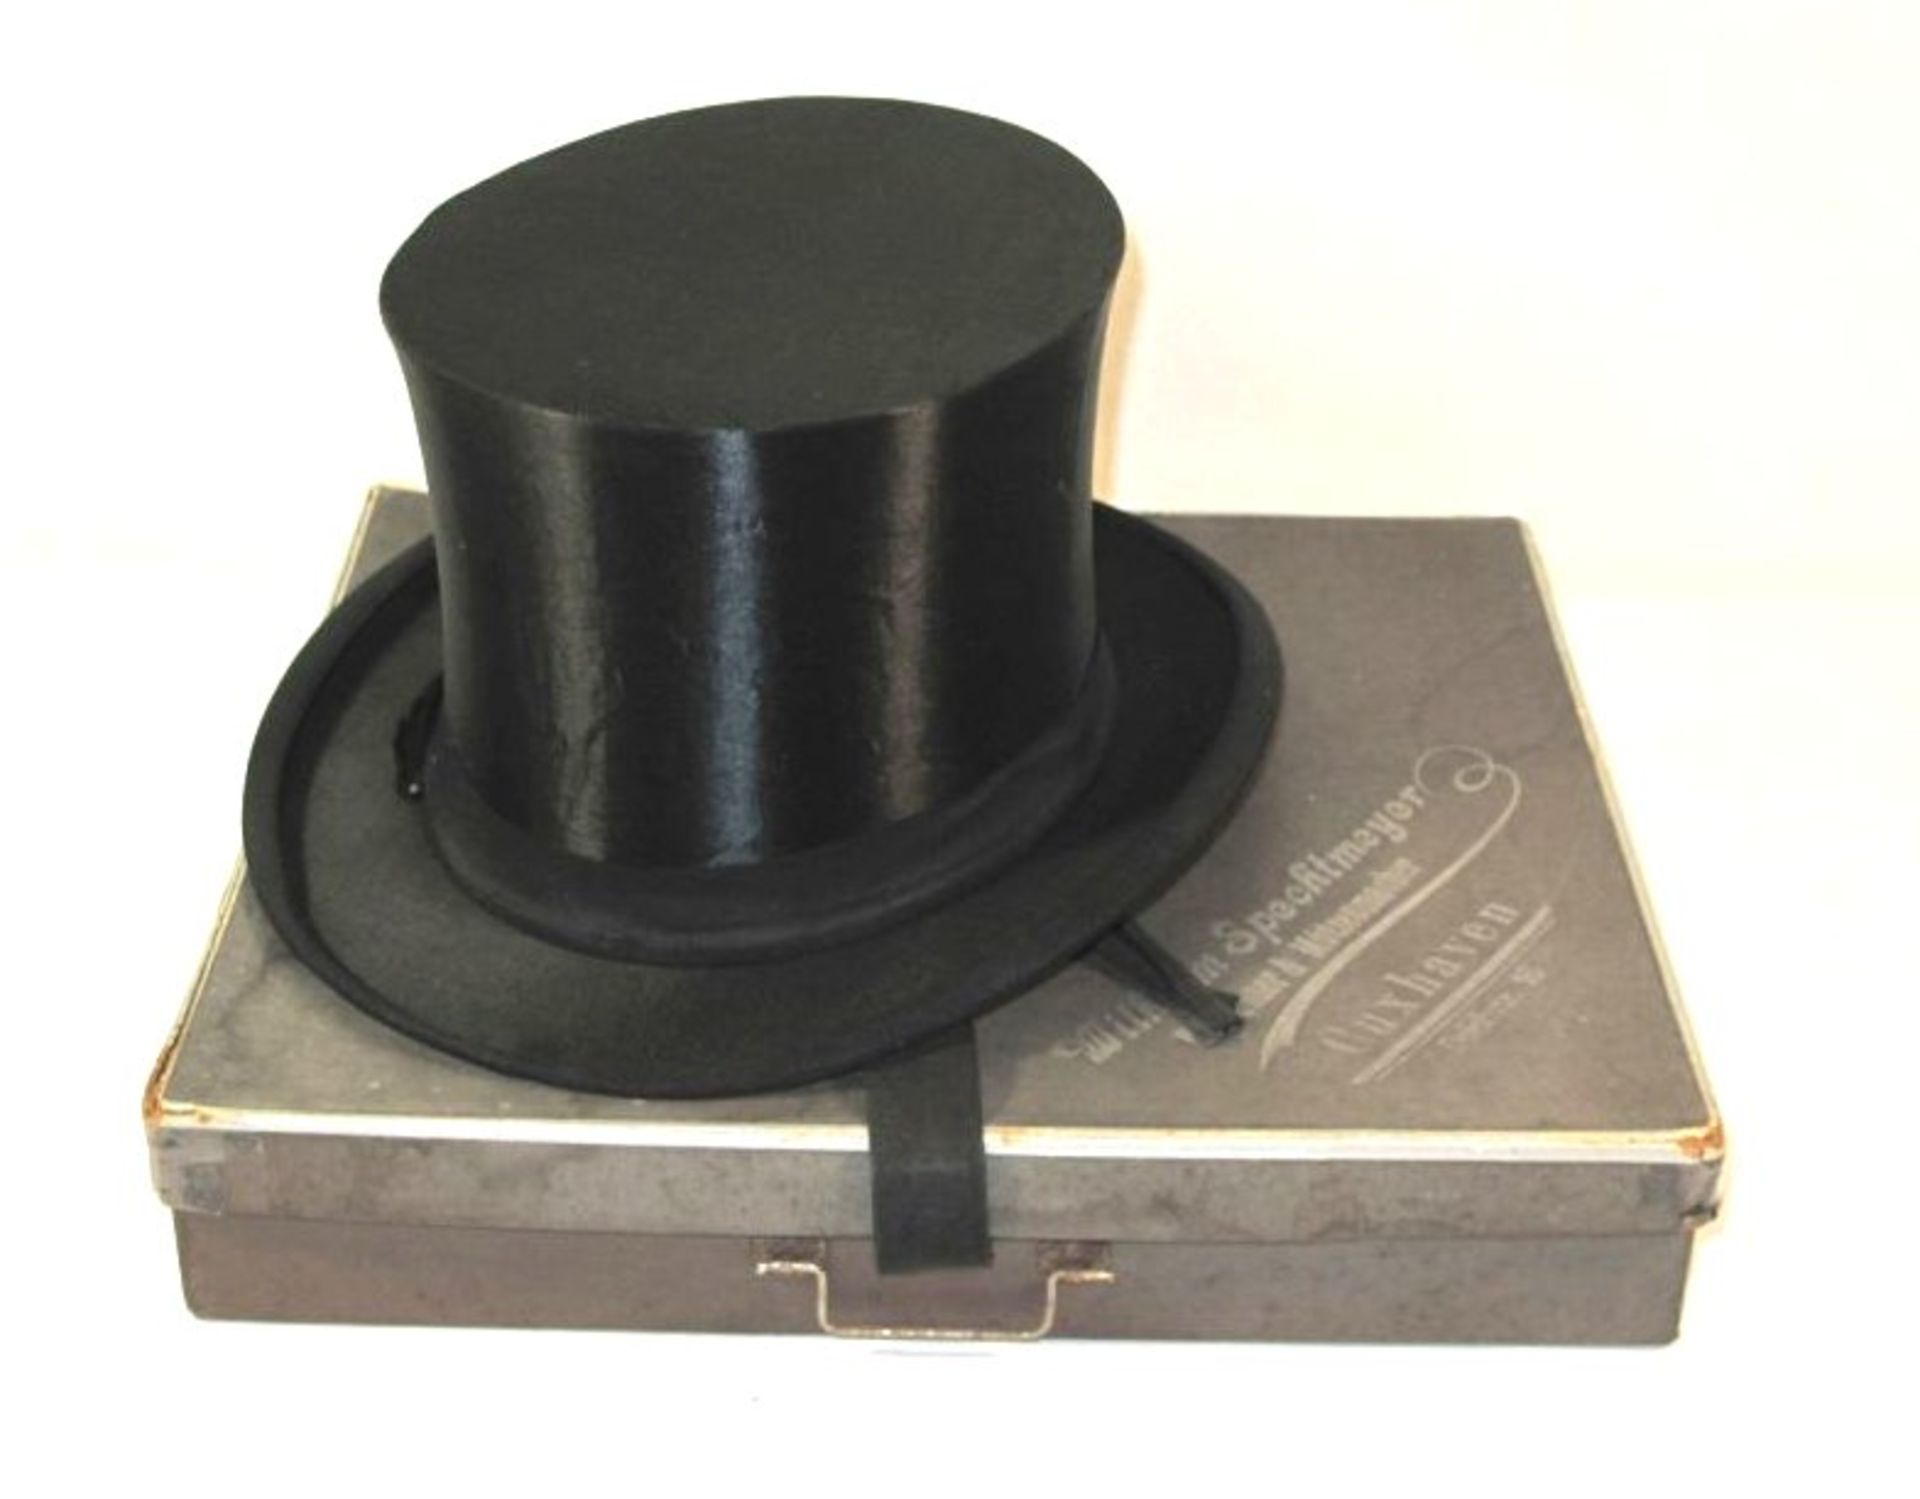 Chapeau-Claque in orig. Schachtel, älter, leichte Gebrauchsspure